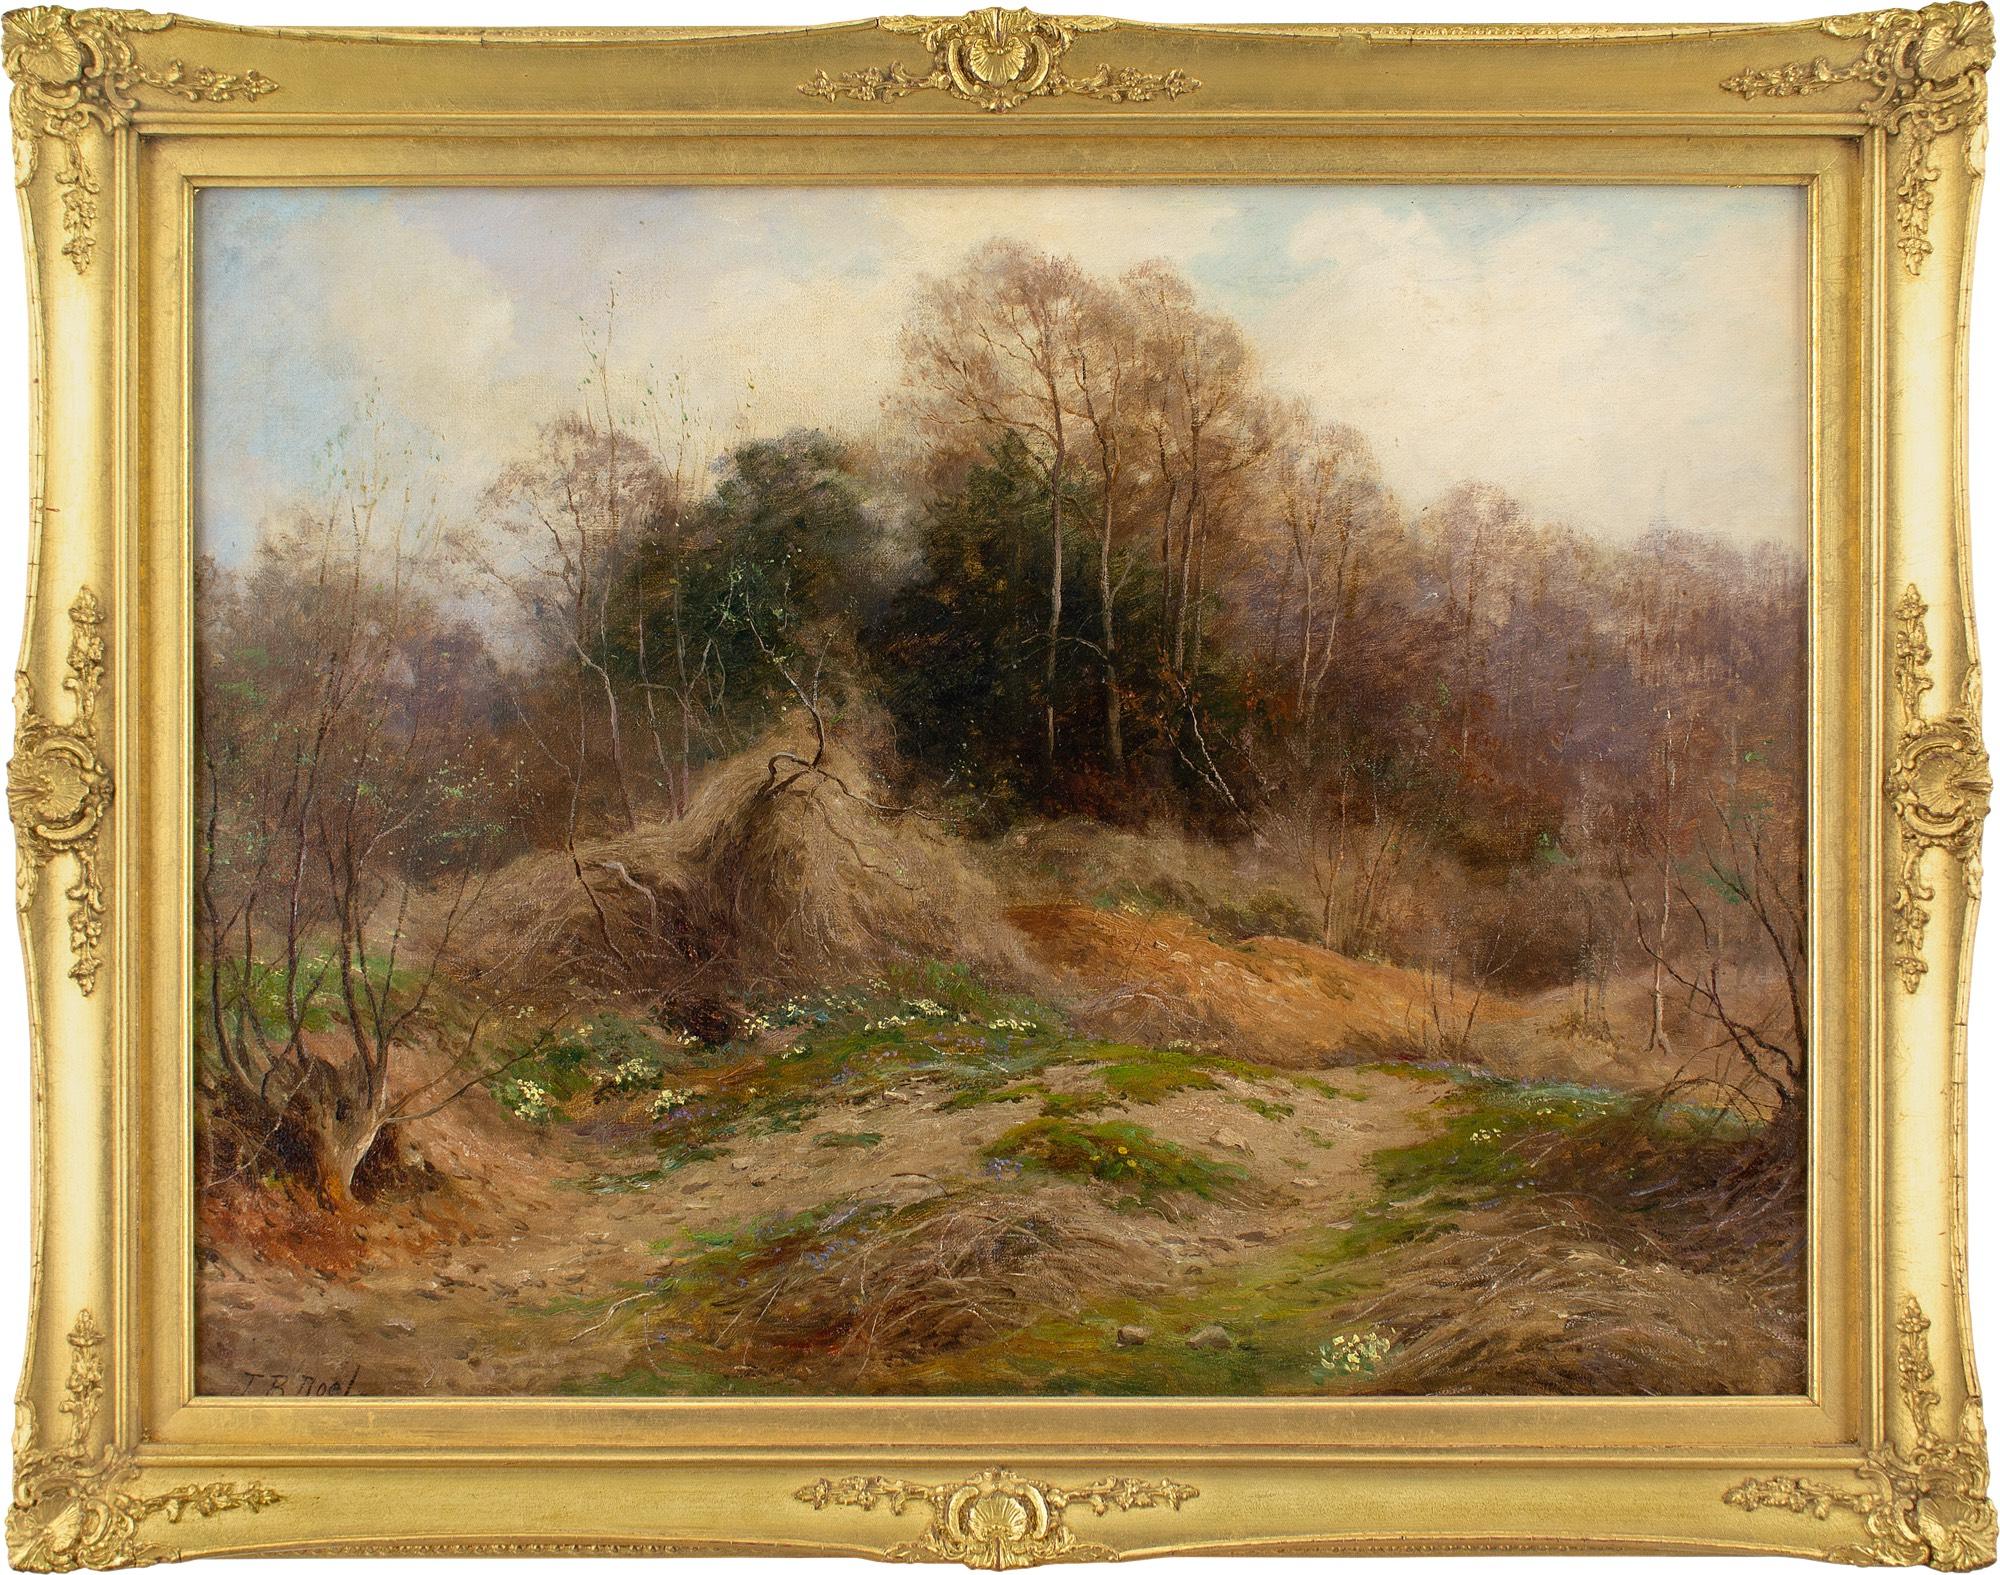 Cette peinture à l'huile du début du XXe siècle de l'artiste britannique John Bates Noel (1870-1927) représente un chemin de campagne accidenté au mois d'avril.

Au milieu des branches désolées émergeant de l'hiver, des poches de primevères jaunes